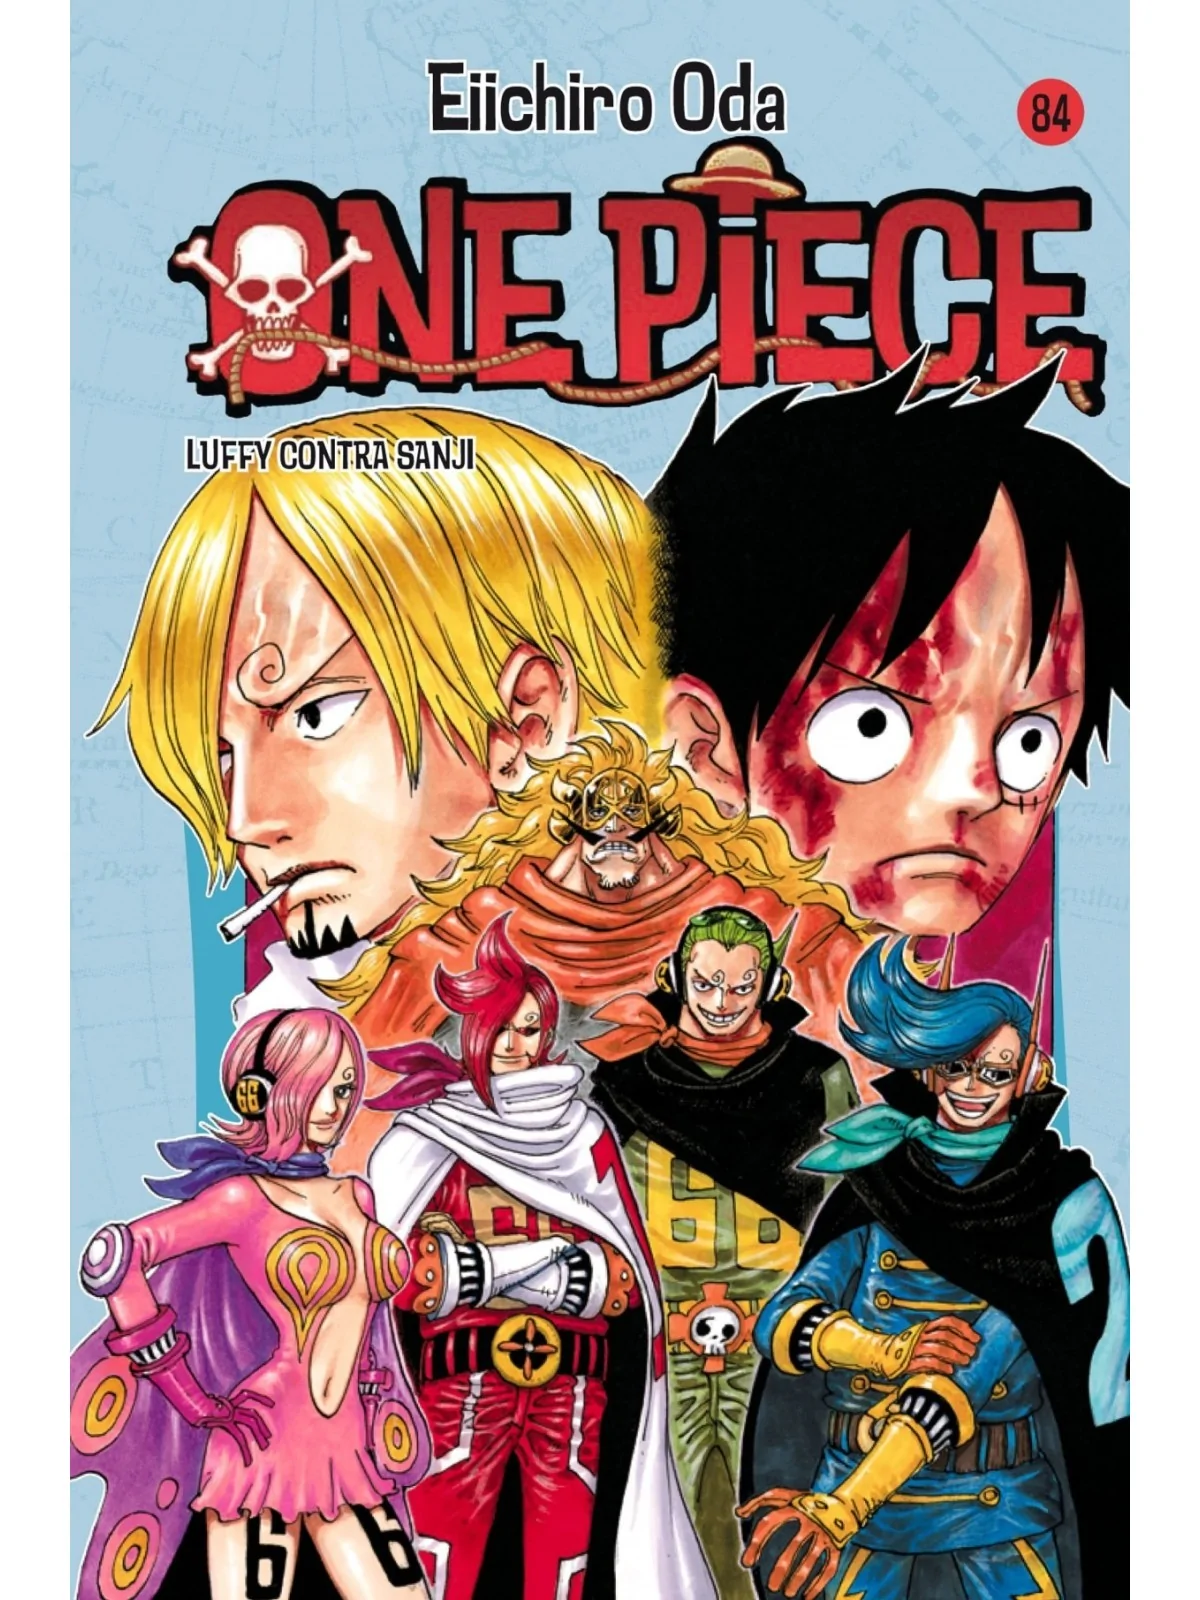 Comprar One Piece 84 barato al mejor precio 8,07 € de PLANETA COMICS